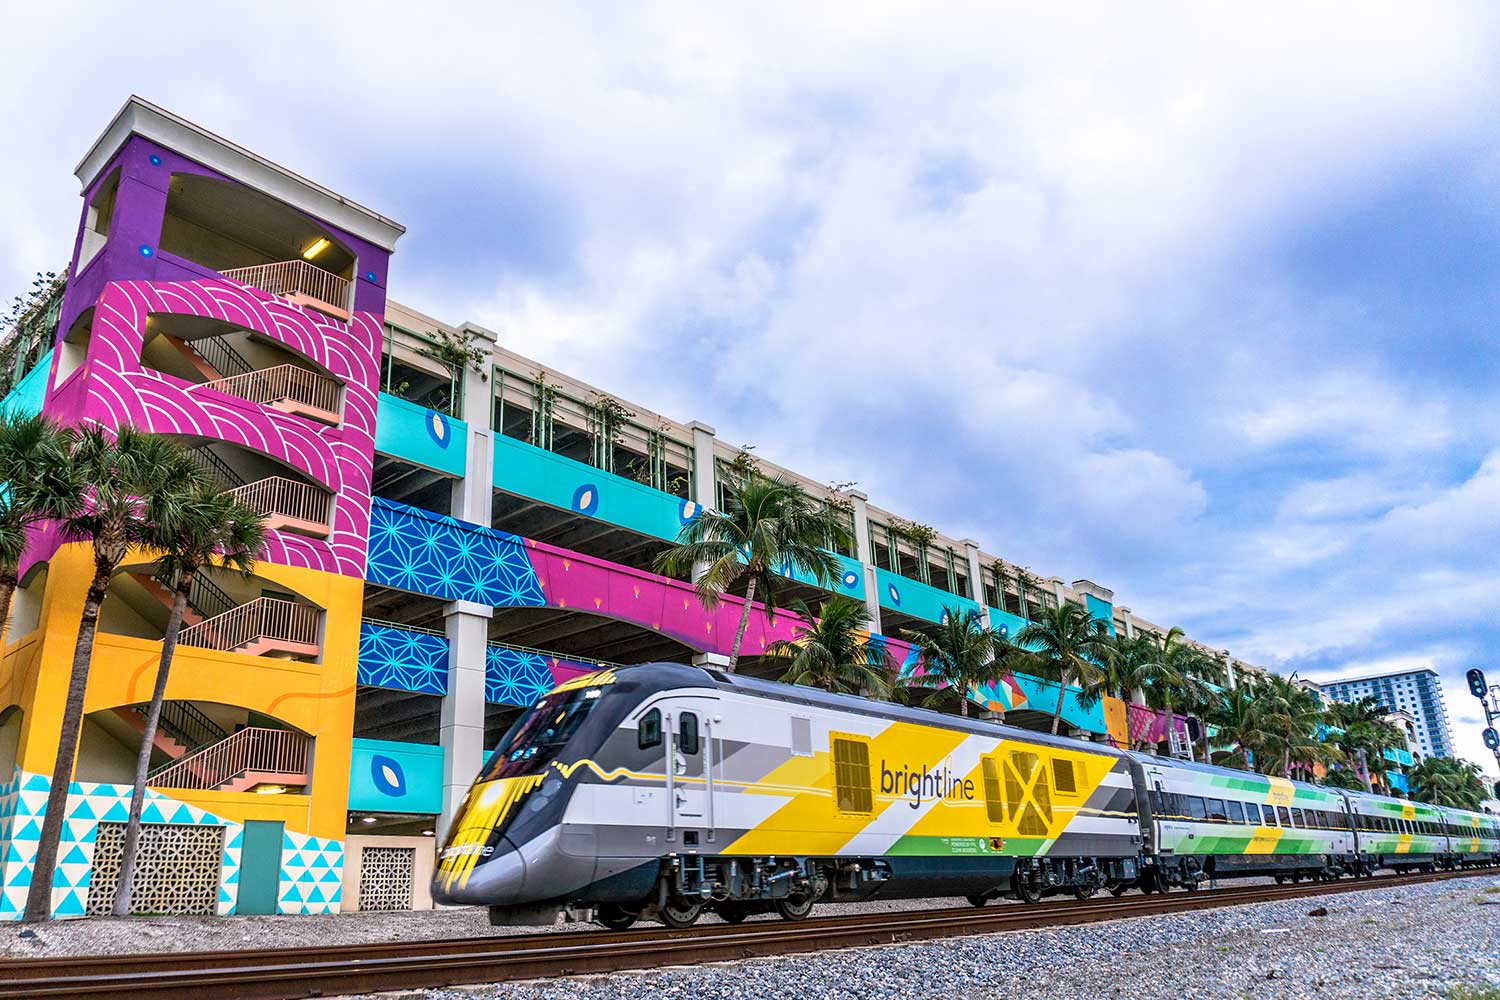 Brightly colored Brightline train